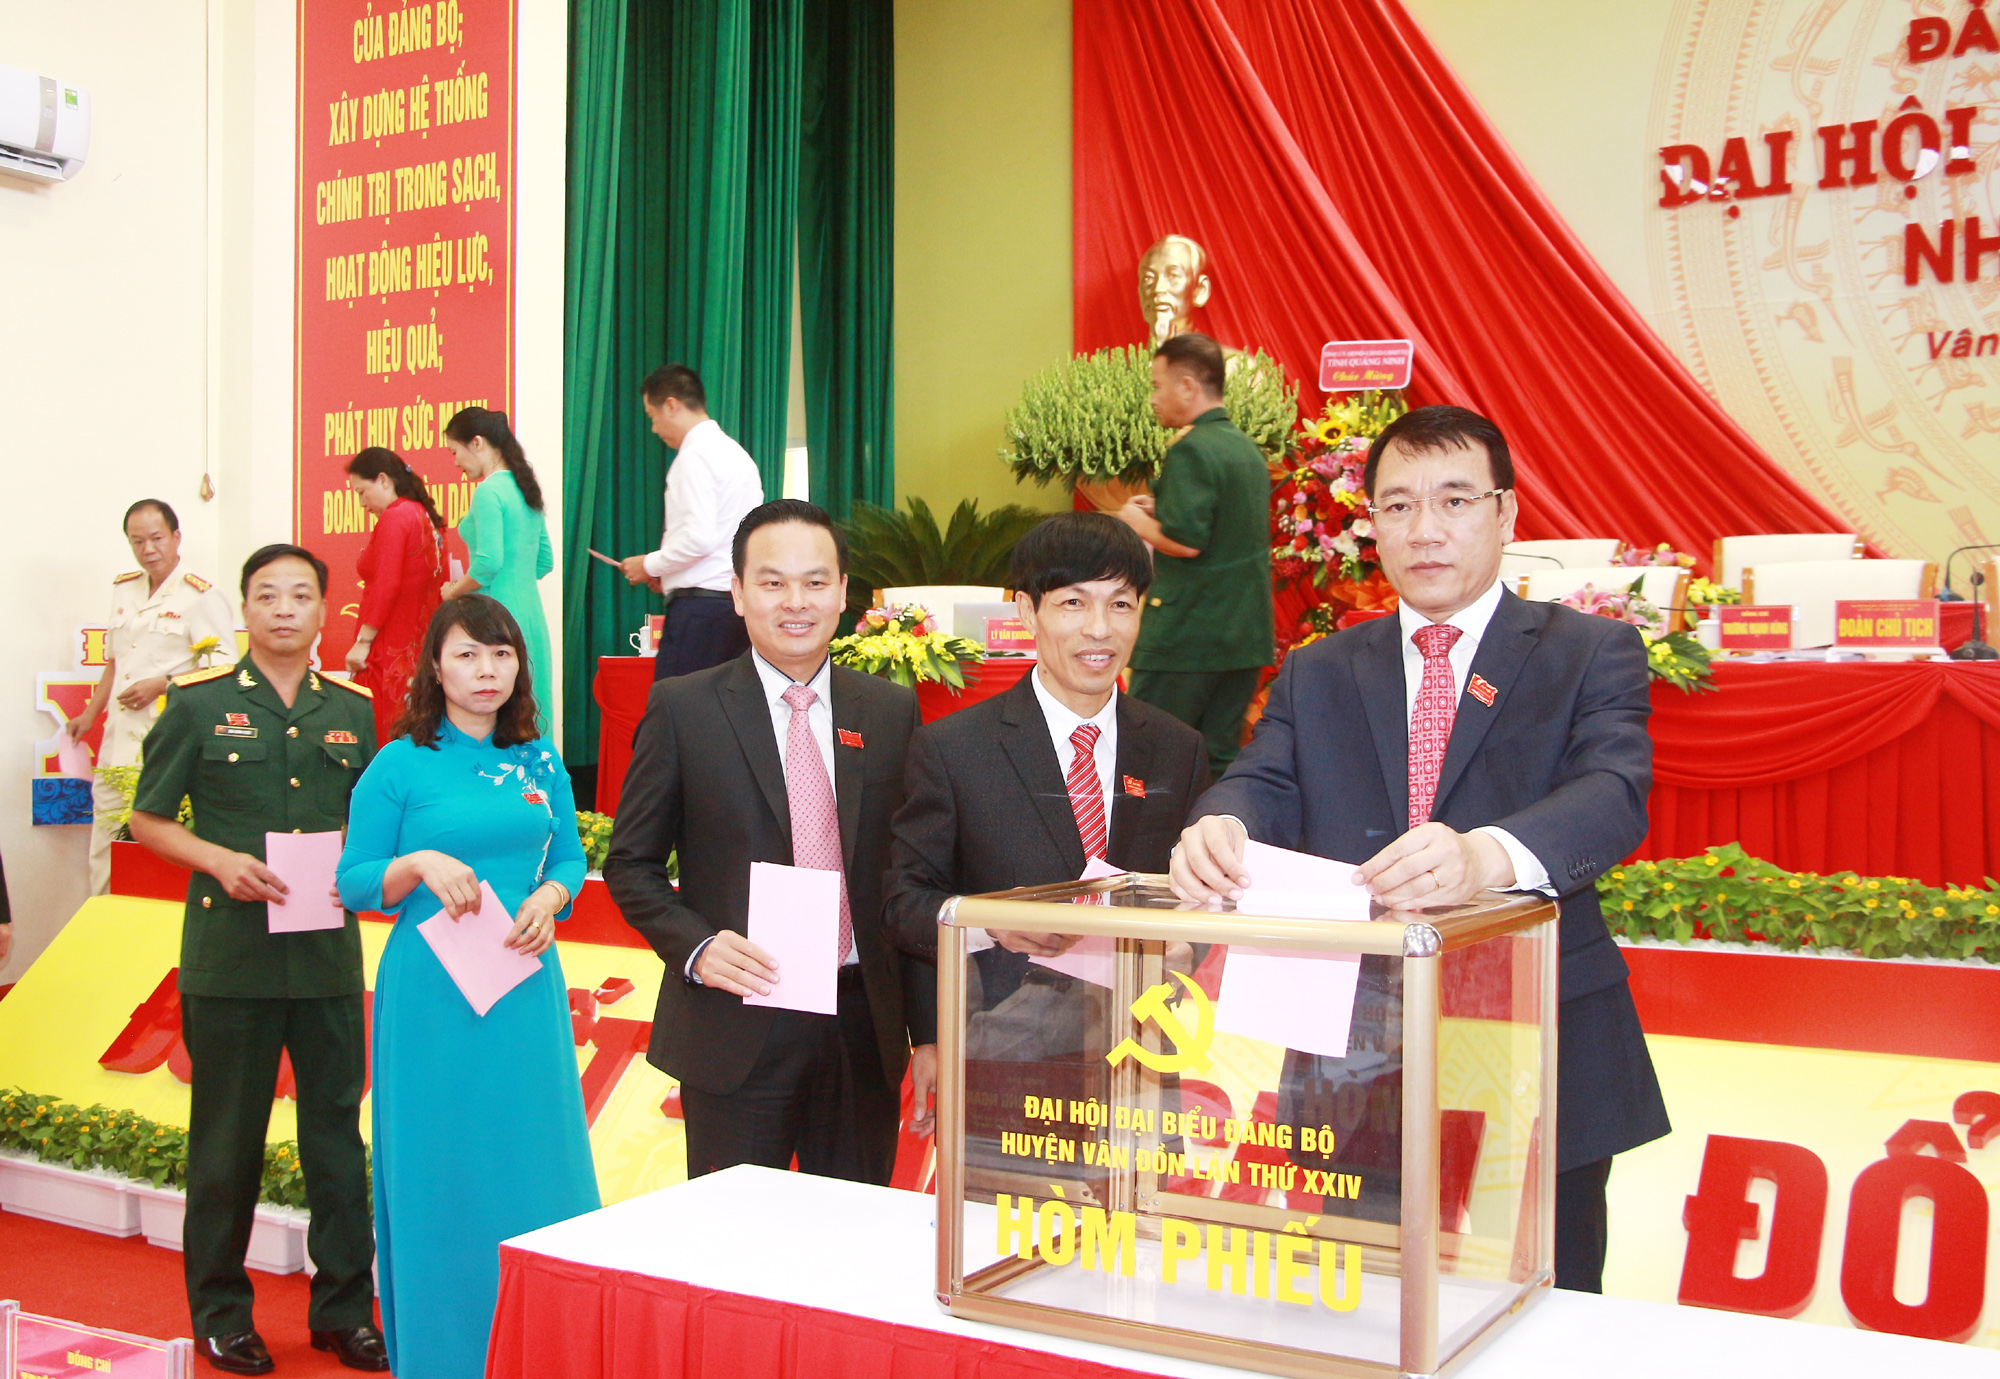 Đại hội Đảng bộ huyện Vân Đồn lần thứ XXIV bỏ phiếu bầu ủy viên Ban Chấp hành Đảng bộ huyện nhiệm kỳ 2020-2025. Ảnh: Mạnh Trường